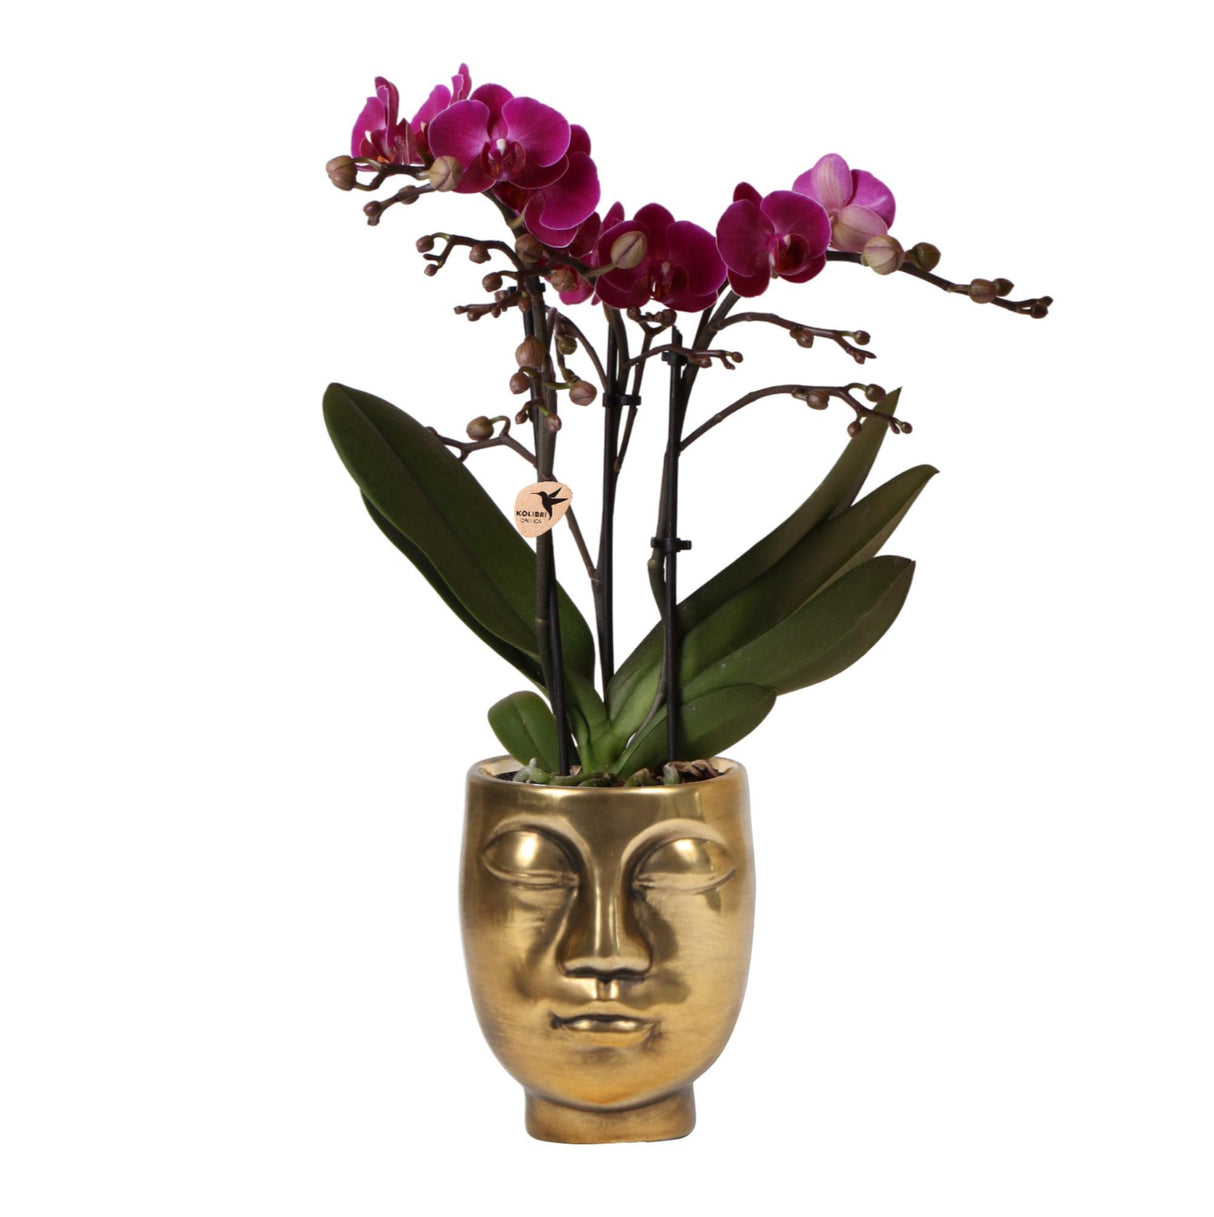 Lila Orchidee und ihr goldfarbener Blumentopf – blühende Zimmerpflanze